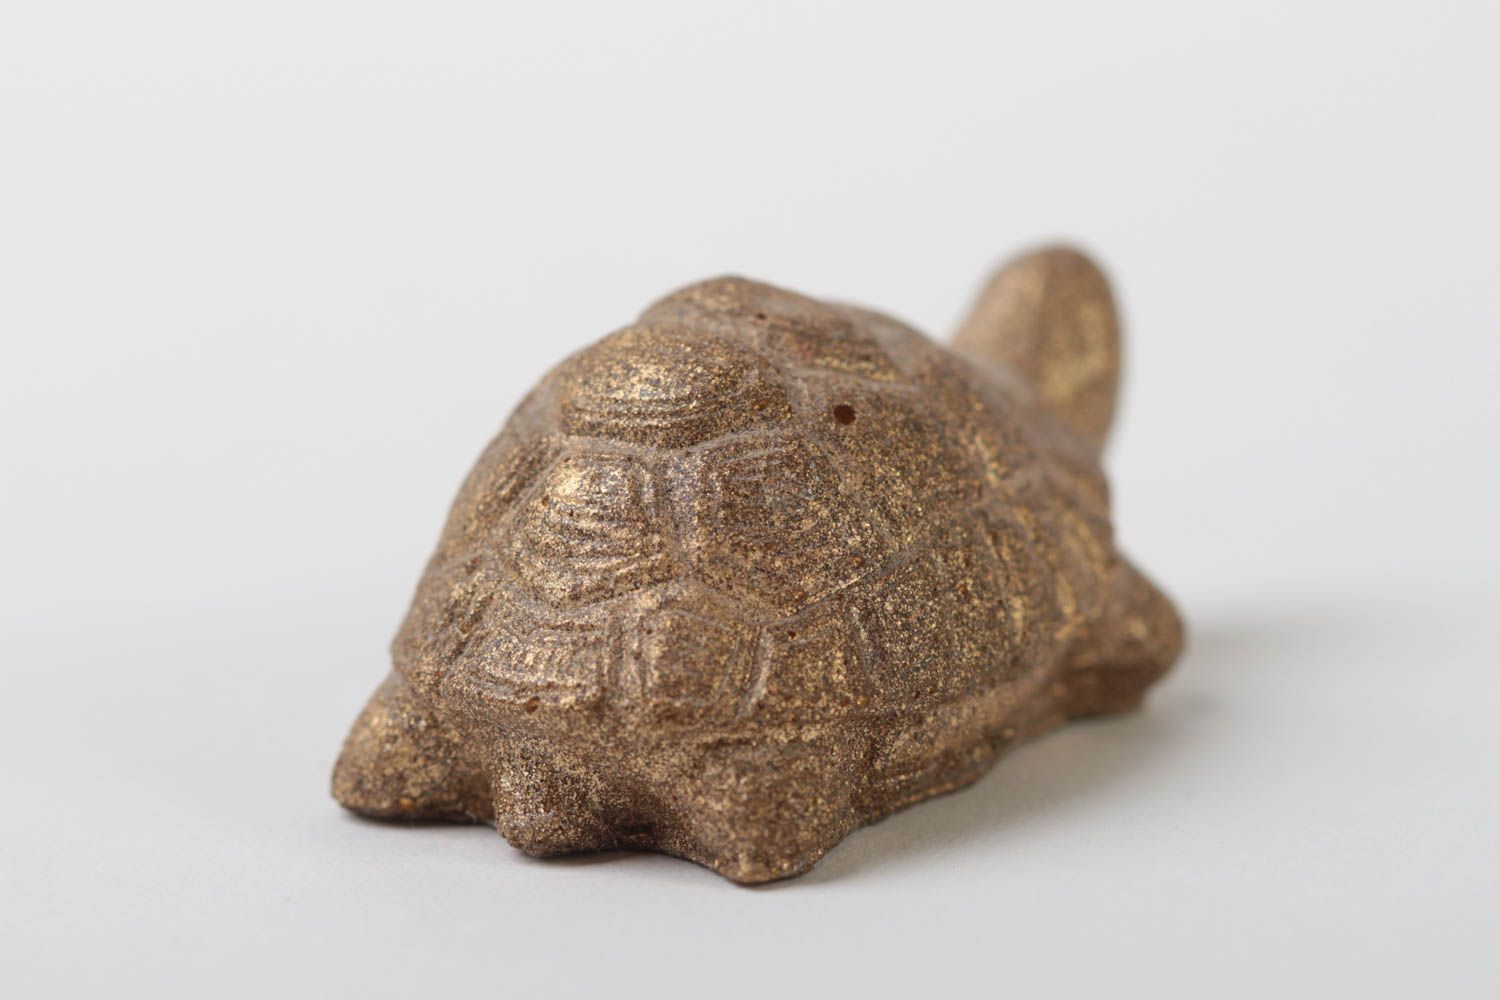 Статуэтка из полимерной смолы в виде черепахи миниатюрная под бронзу хенд мейд фото 3